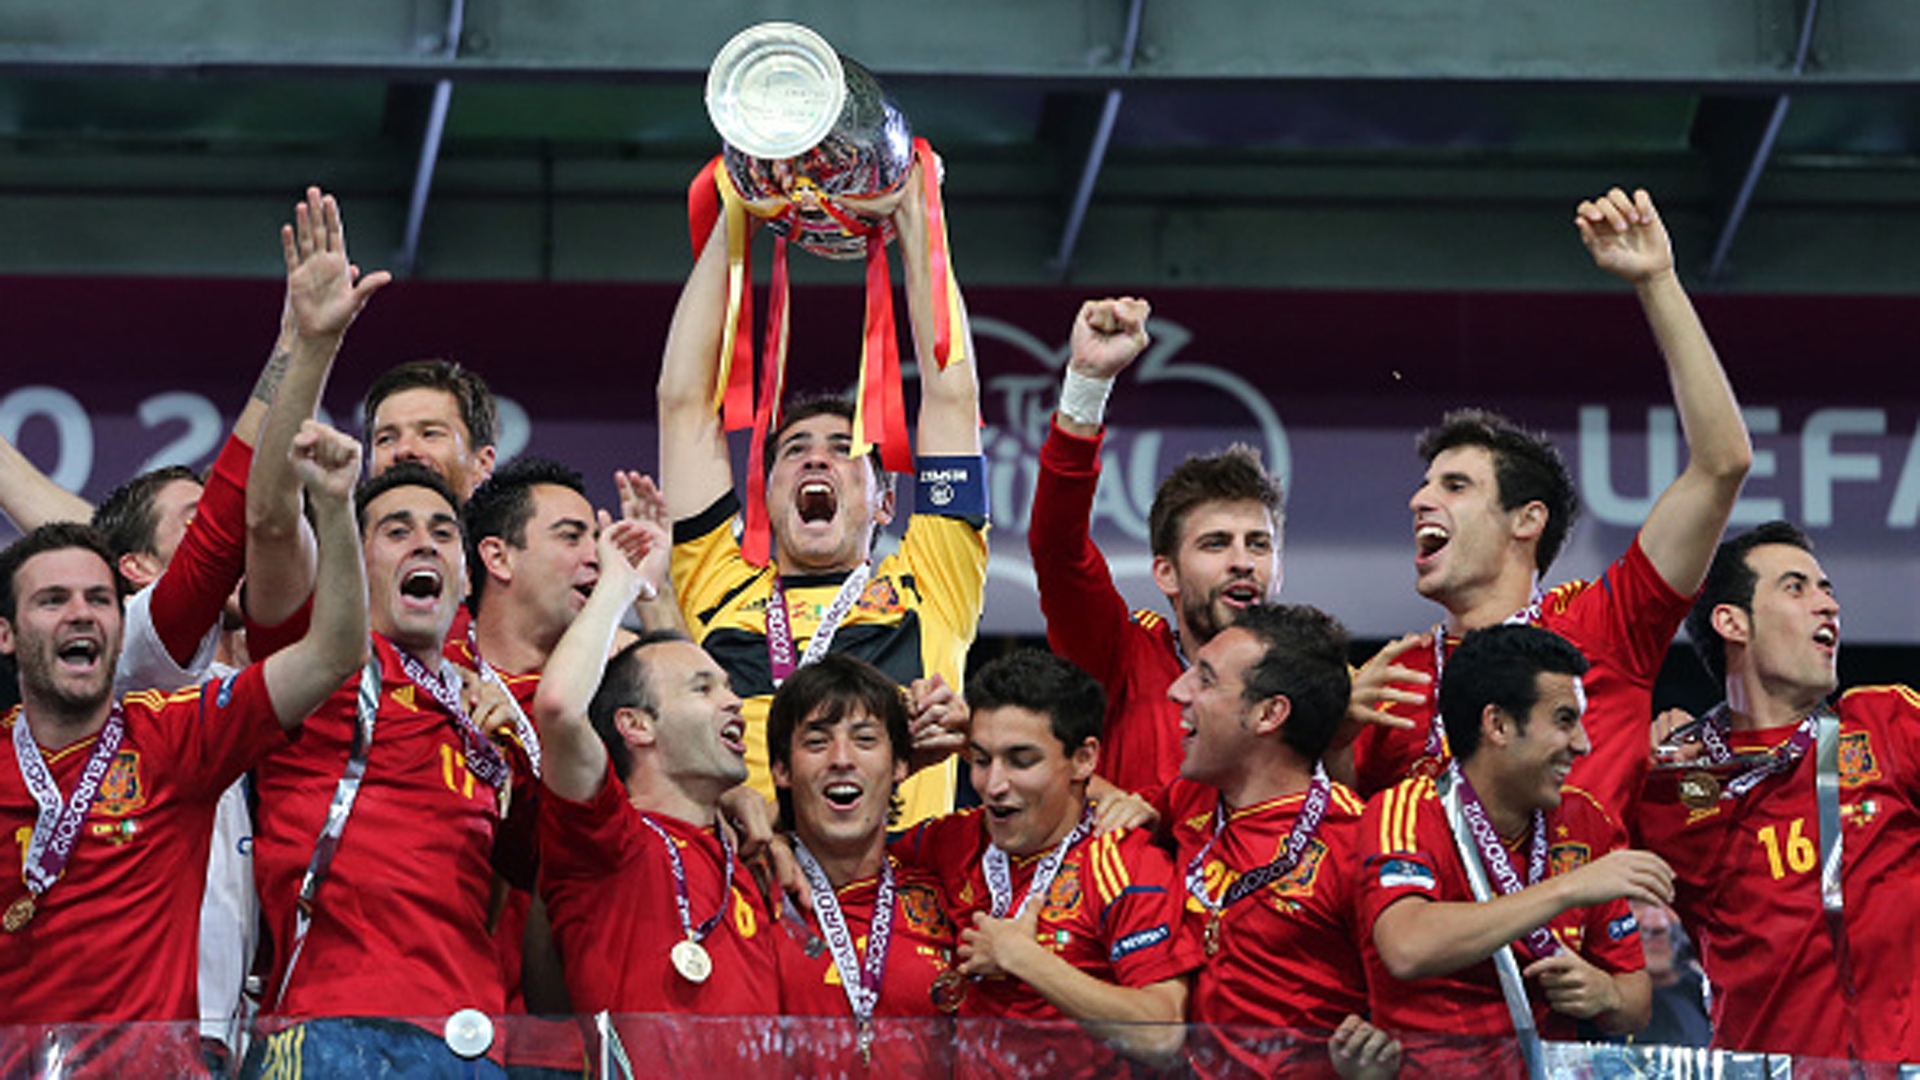 Đội hình Tây Ban Nha vô địch Euro 2012 giờ ra sao?